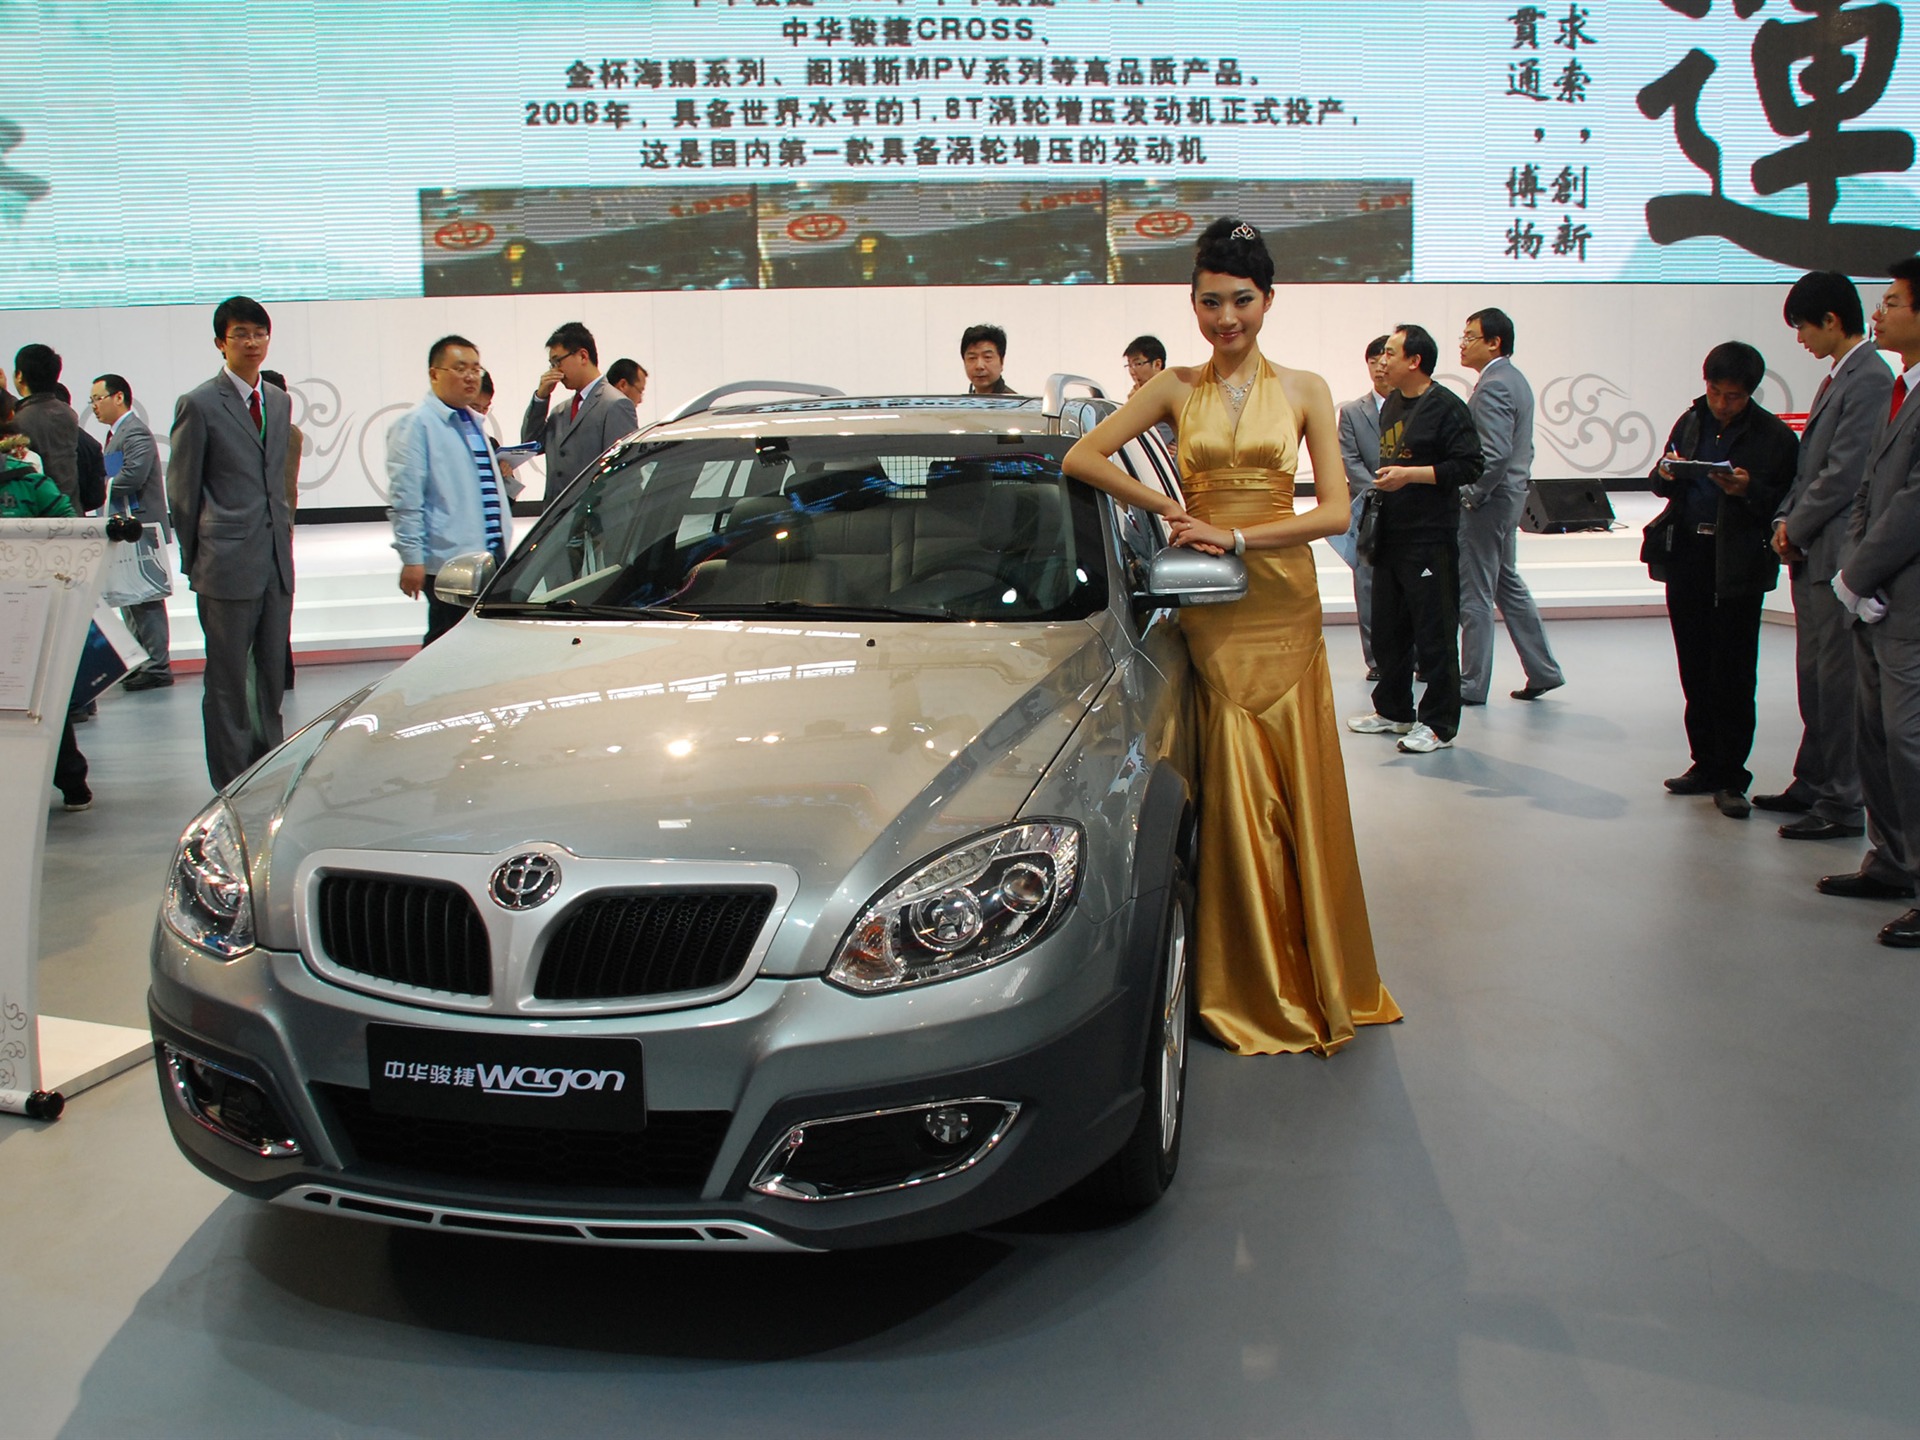 2010 Beijing International Auto Show (1) (z321x123 works) #18 - 1920x1440